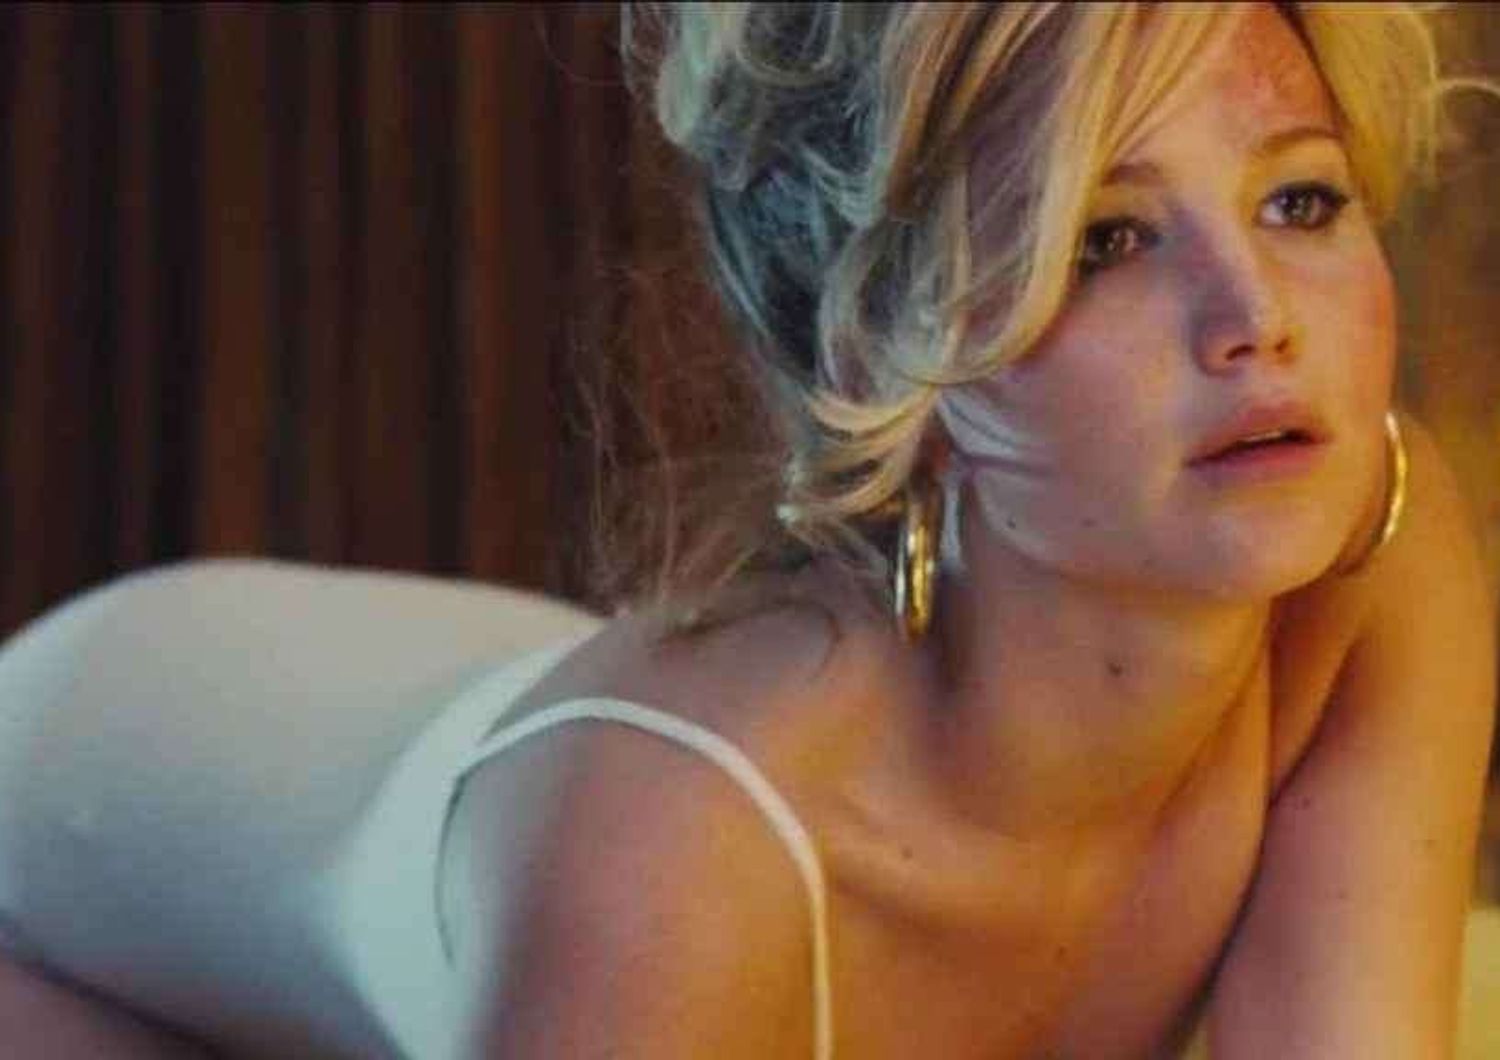 Una galleria d'arte esporra' foto hot rubate di Jennifer Lawrence